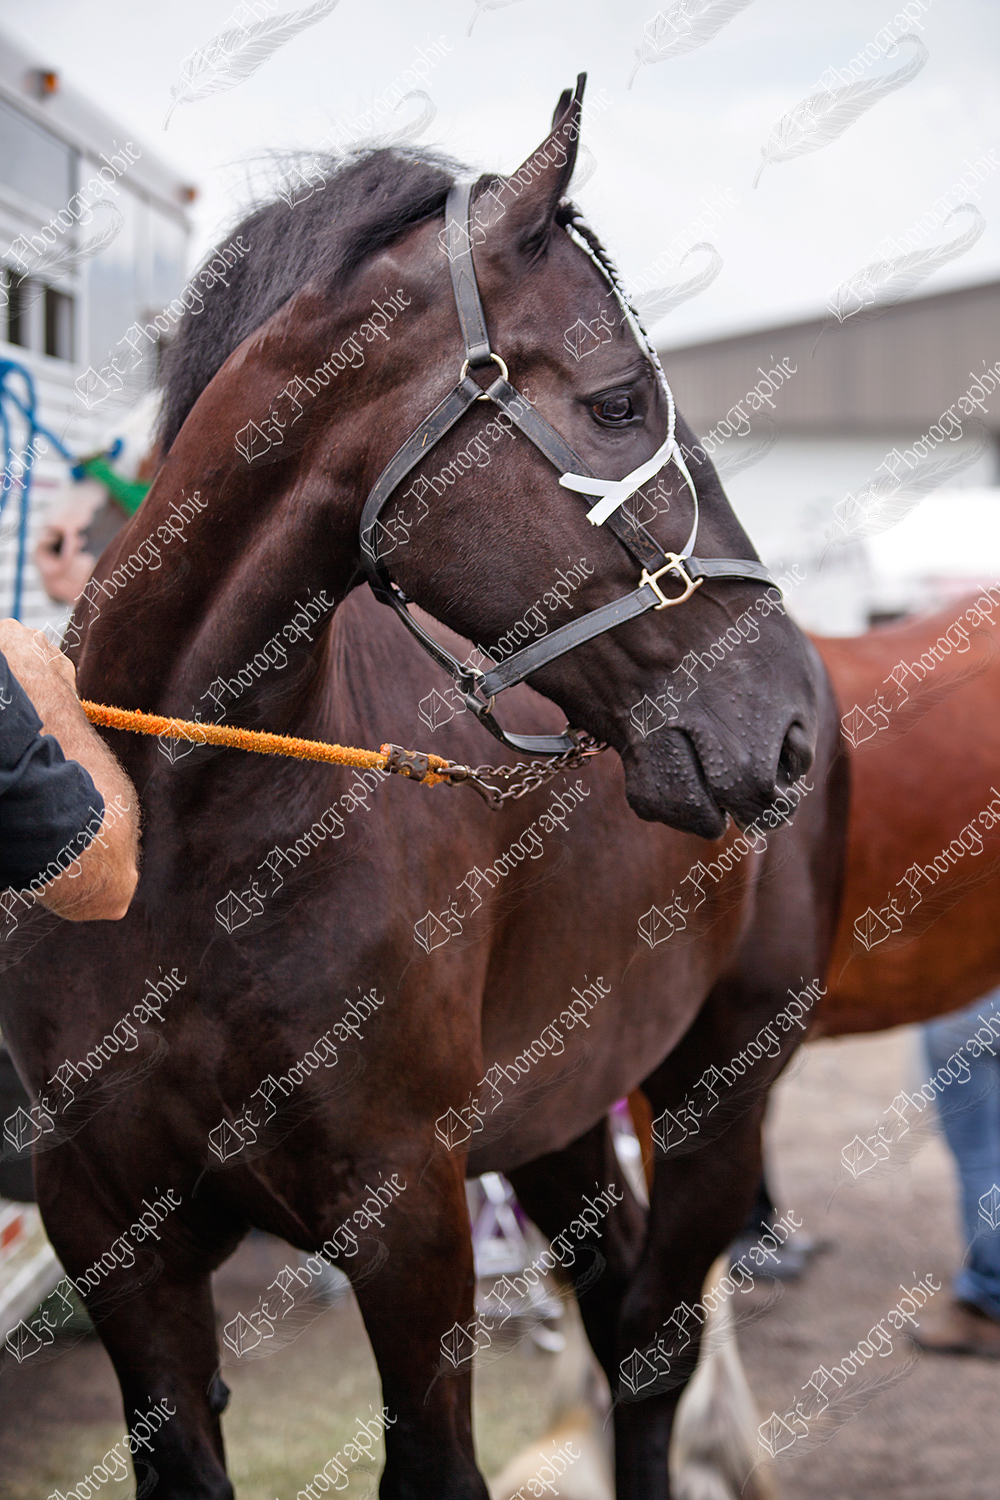 elze_photo_6582_cheval_noir_spectacle_shire_horse_black